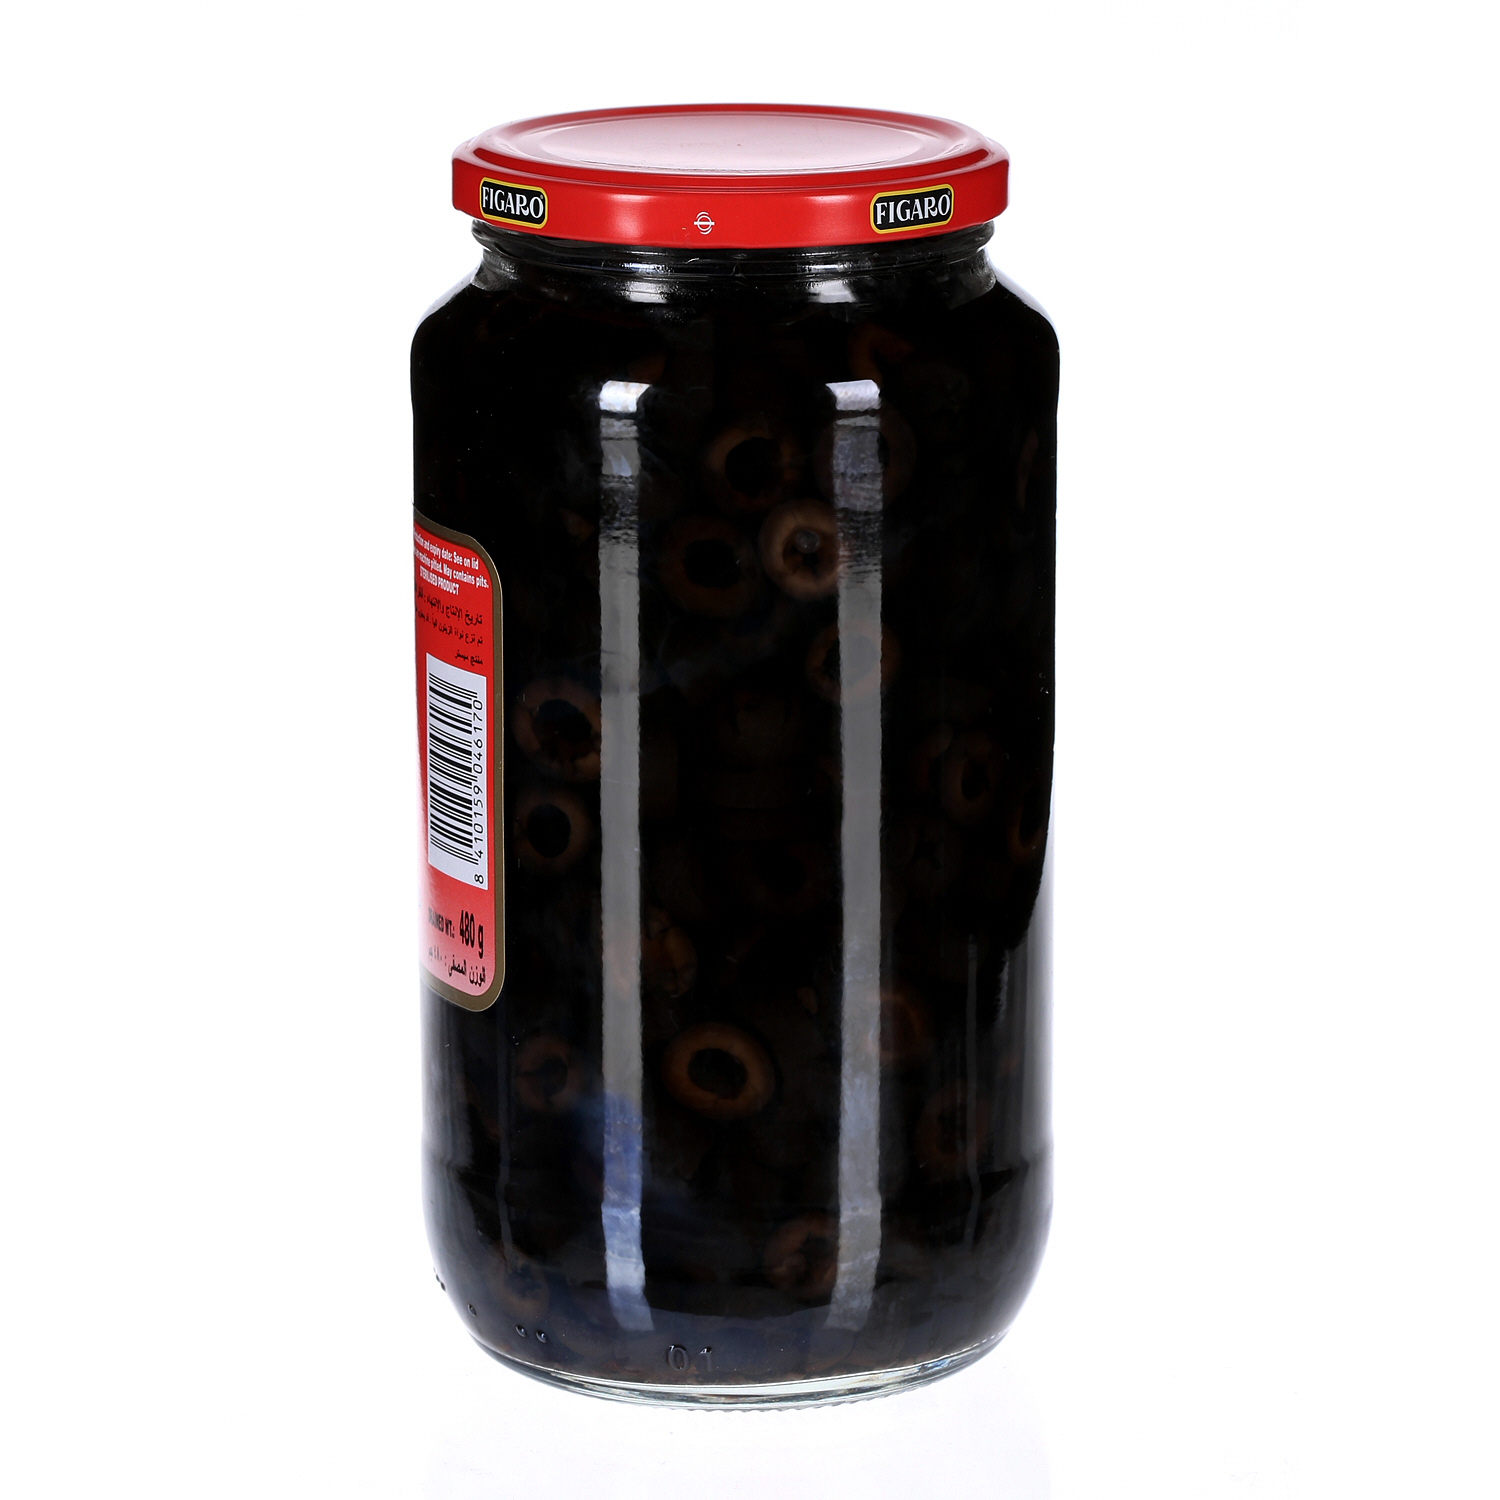 Figaro Slicesd Black Olives 480 g